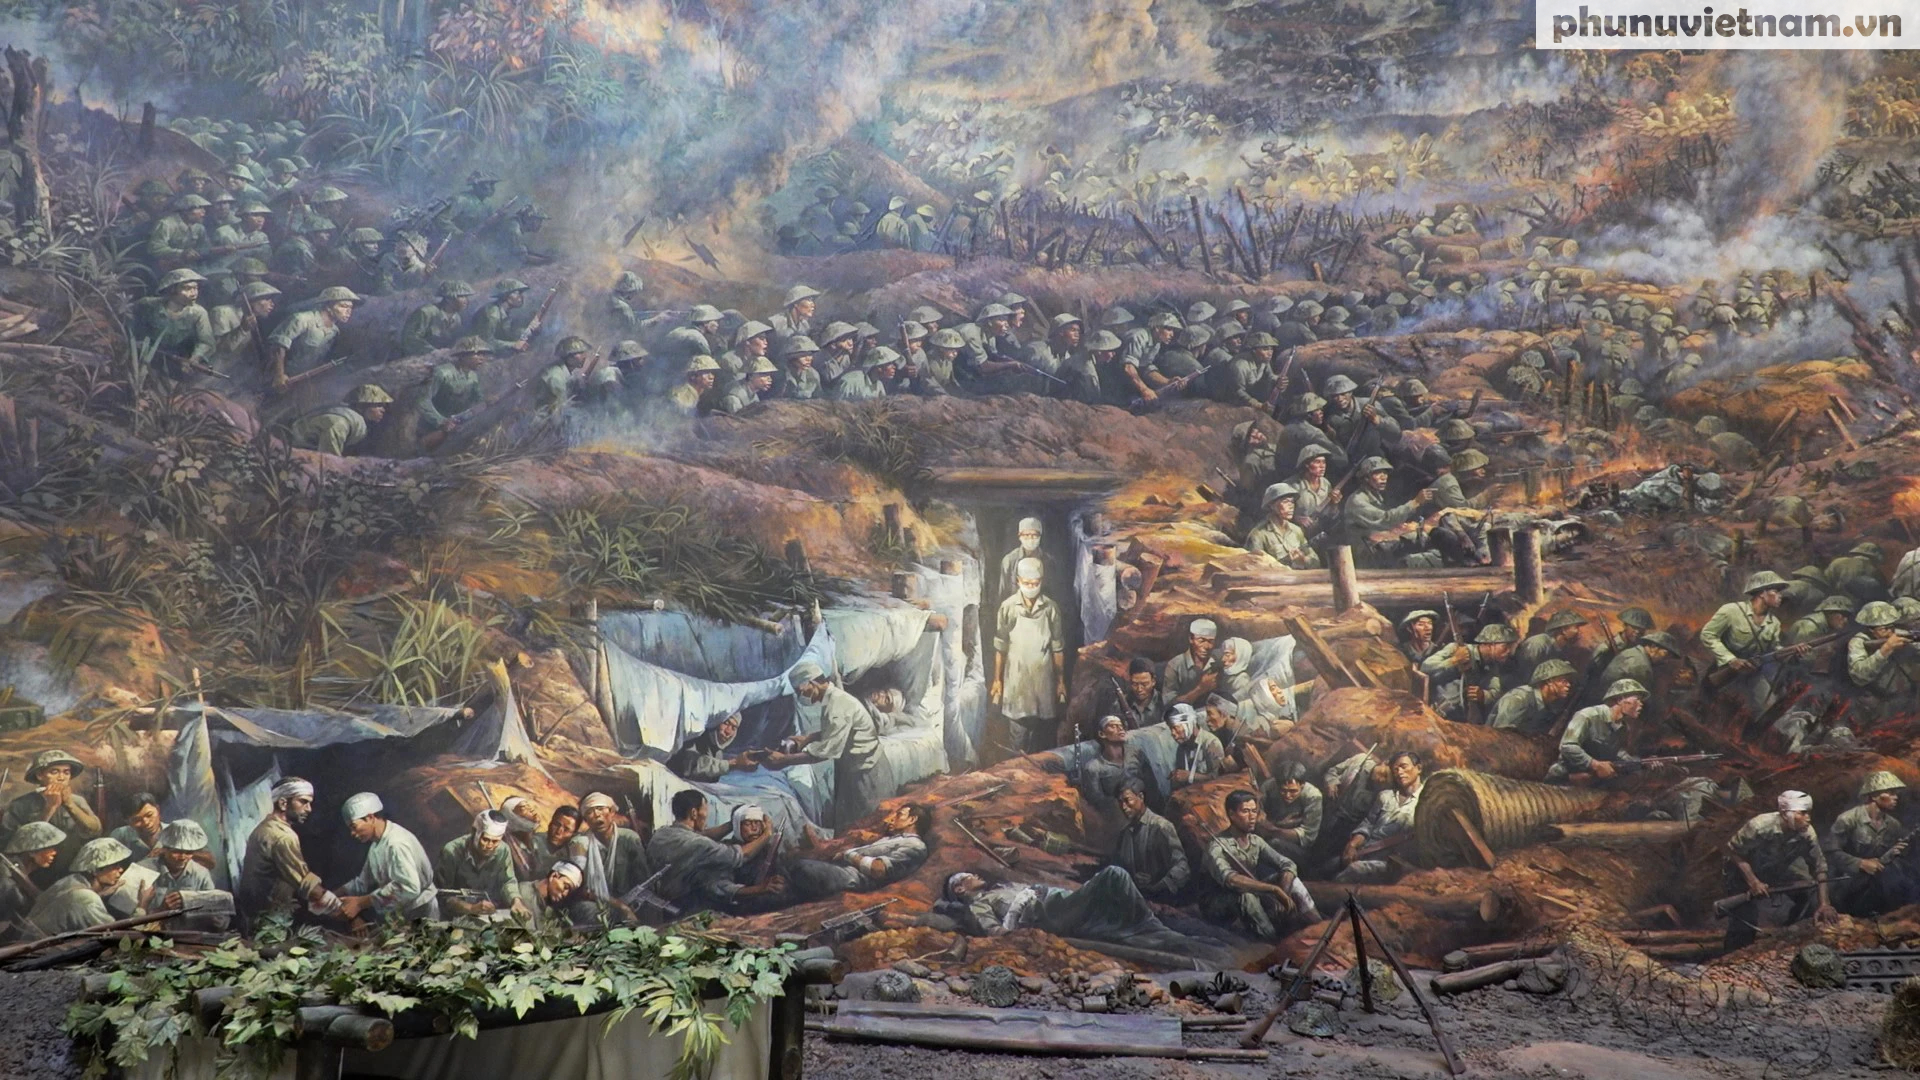 Tranh sơn dầu panorama hơn 3.000m2 về chiến dịch Điện Biên Phủ - Ảnh 6.